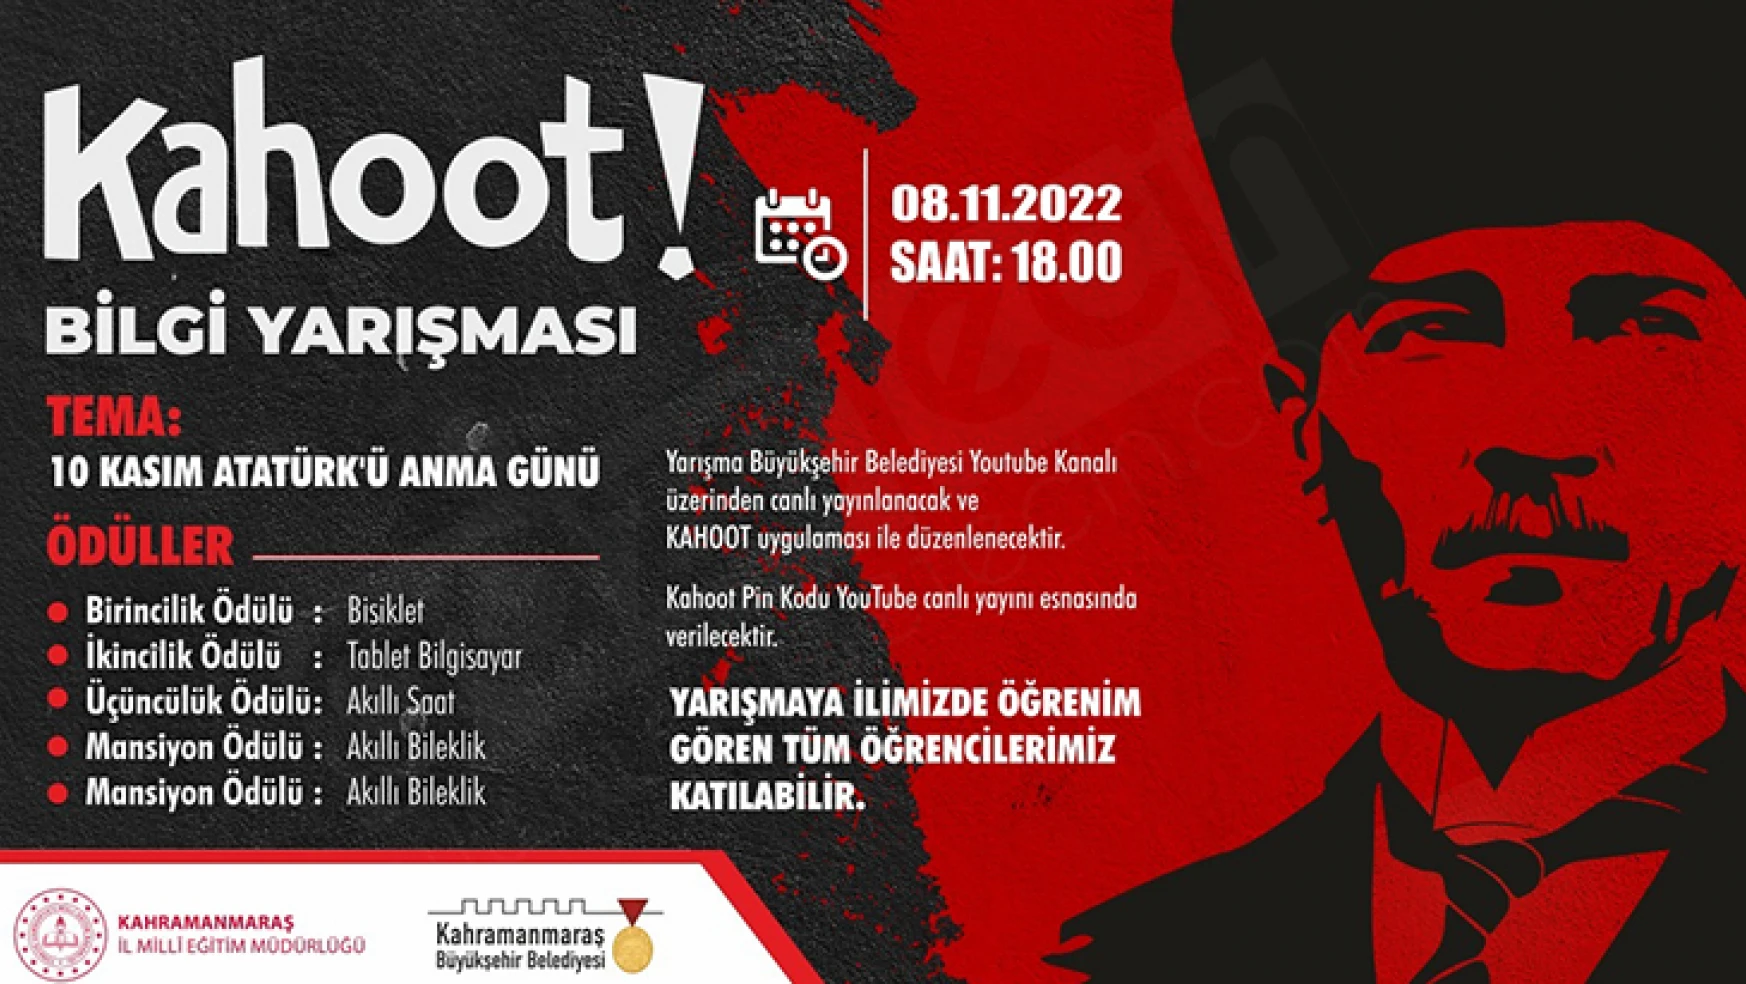 Atatürk'ü Anma Günü temalı Kahoot bilgi yarışması